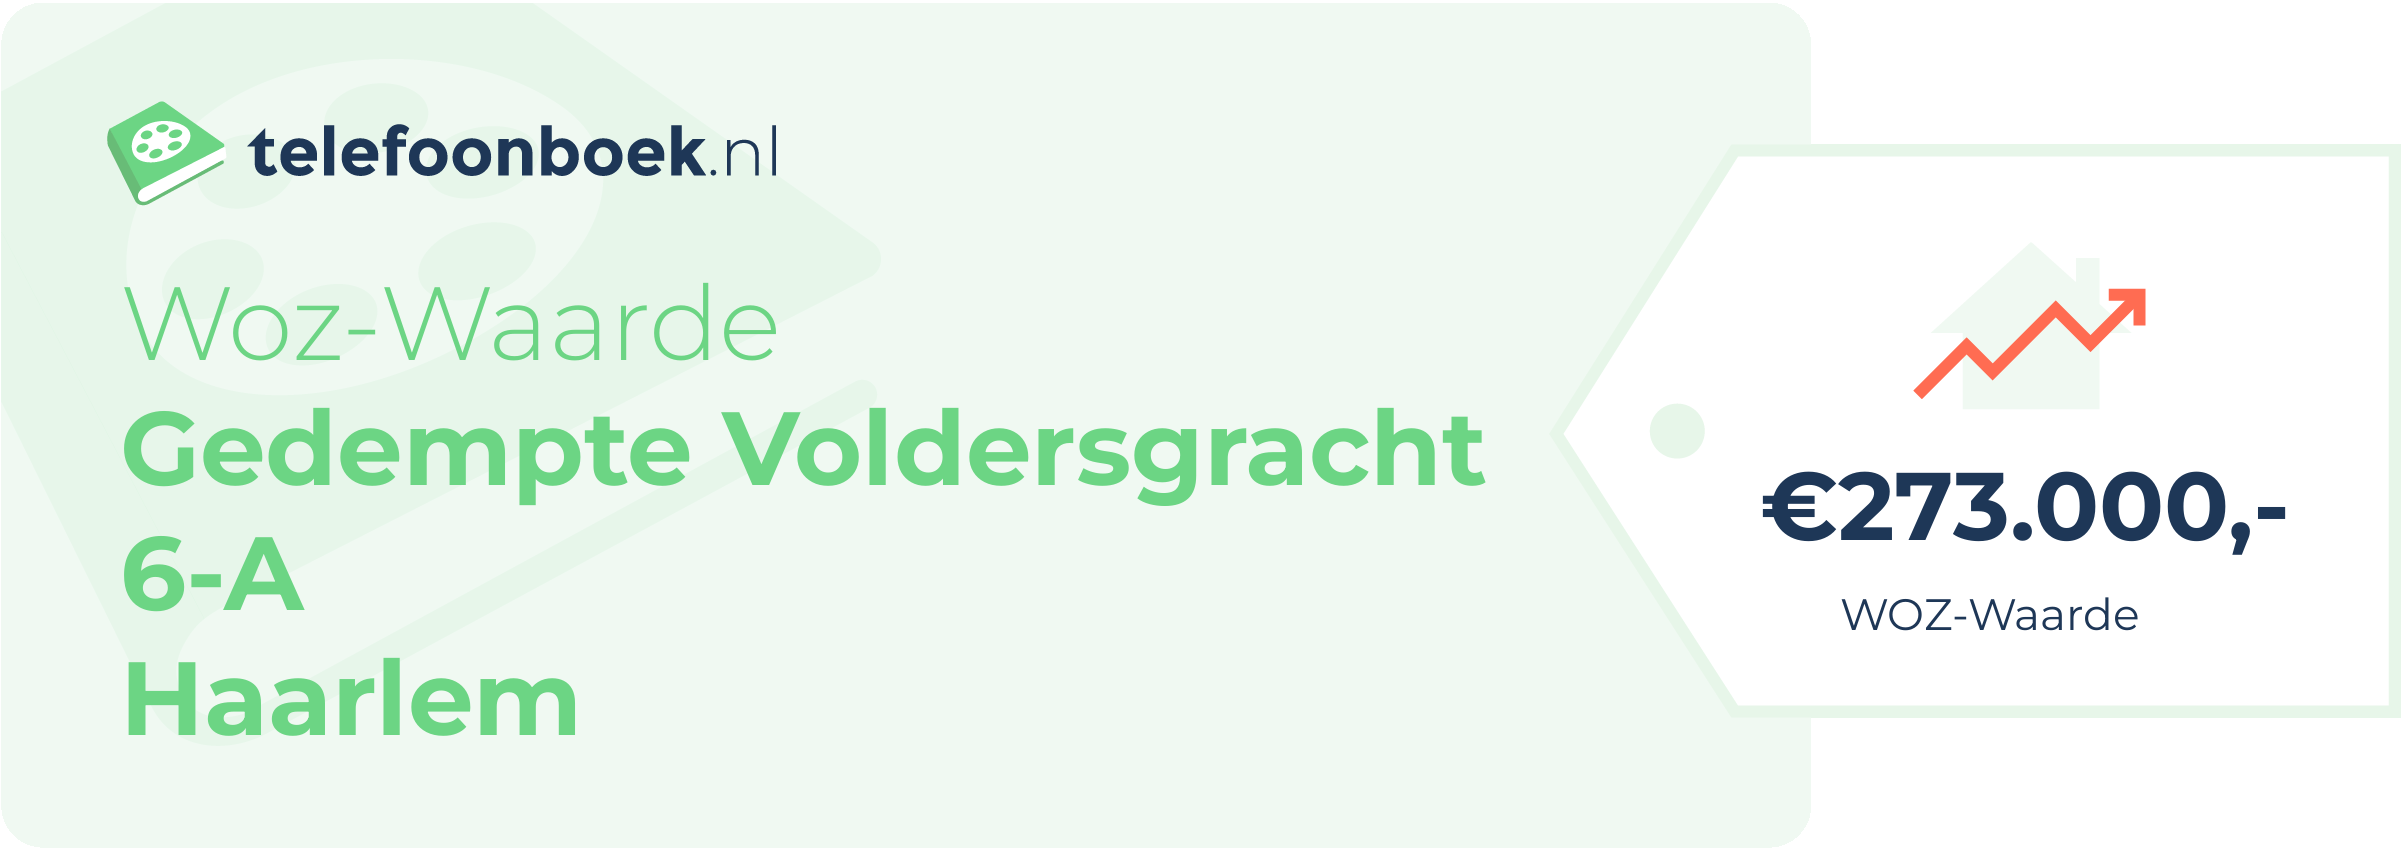 WOZ-waarde Gedempte Voldersgracht 6-A Haarlem